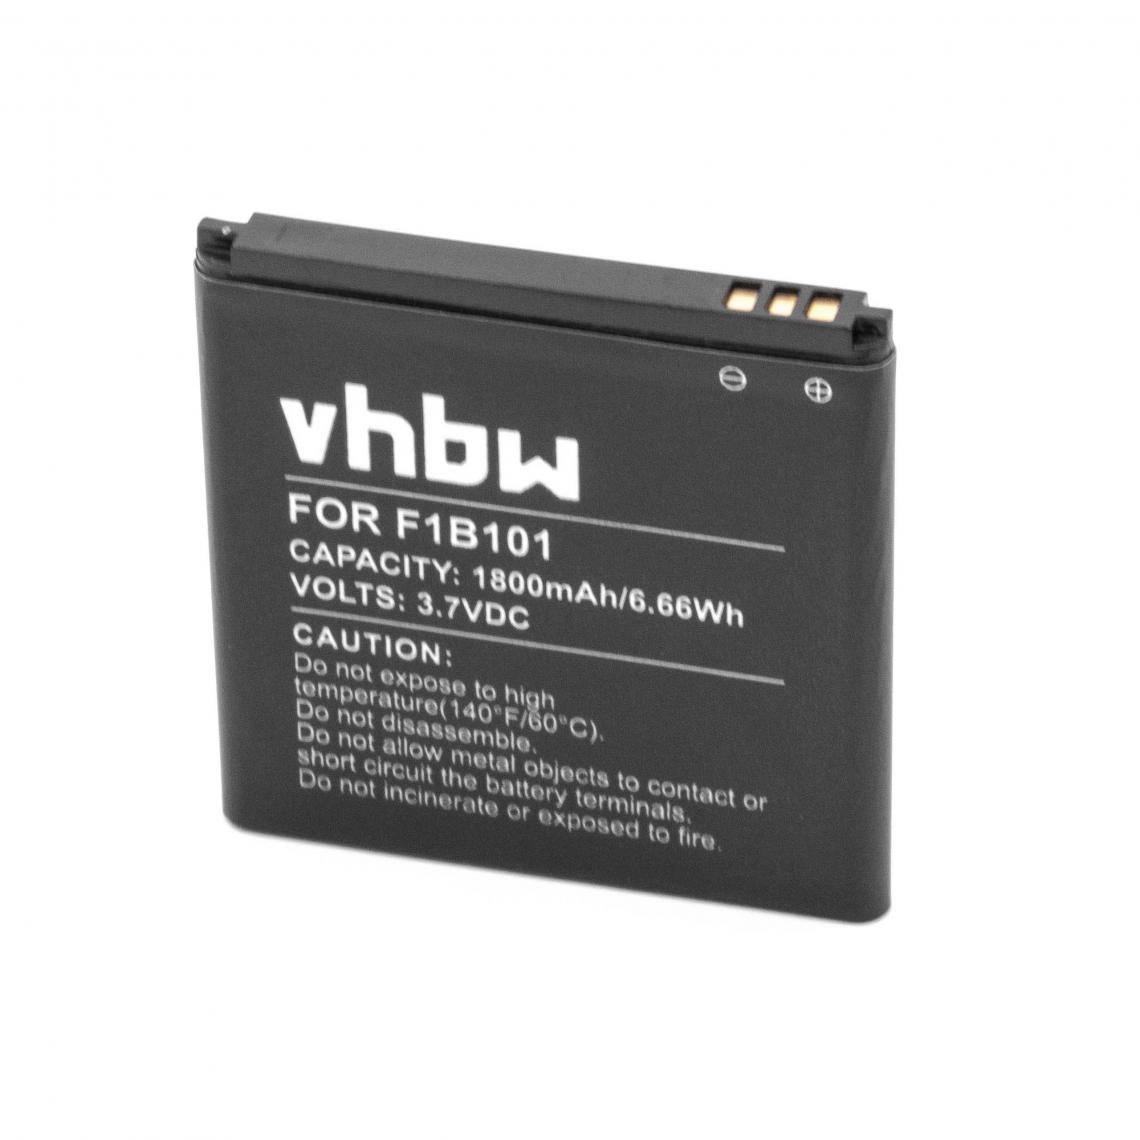 Vhbw - vhbw Li-Ion batterie 1800mAh (3.7V) pour téléphone portable mobil smartphone comme Fairphone F1B101, F1B201 - Batterie téléphone